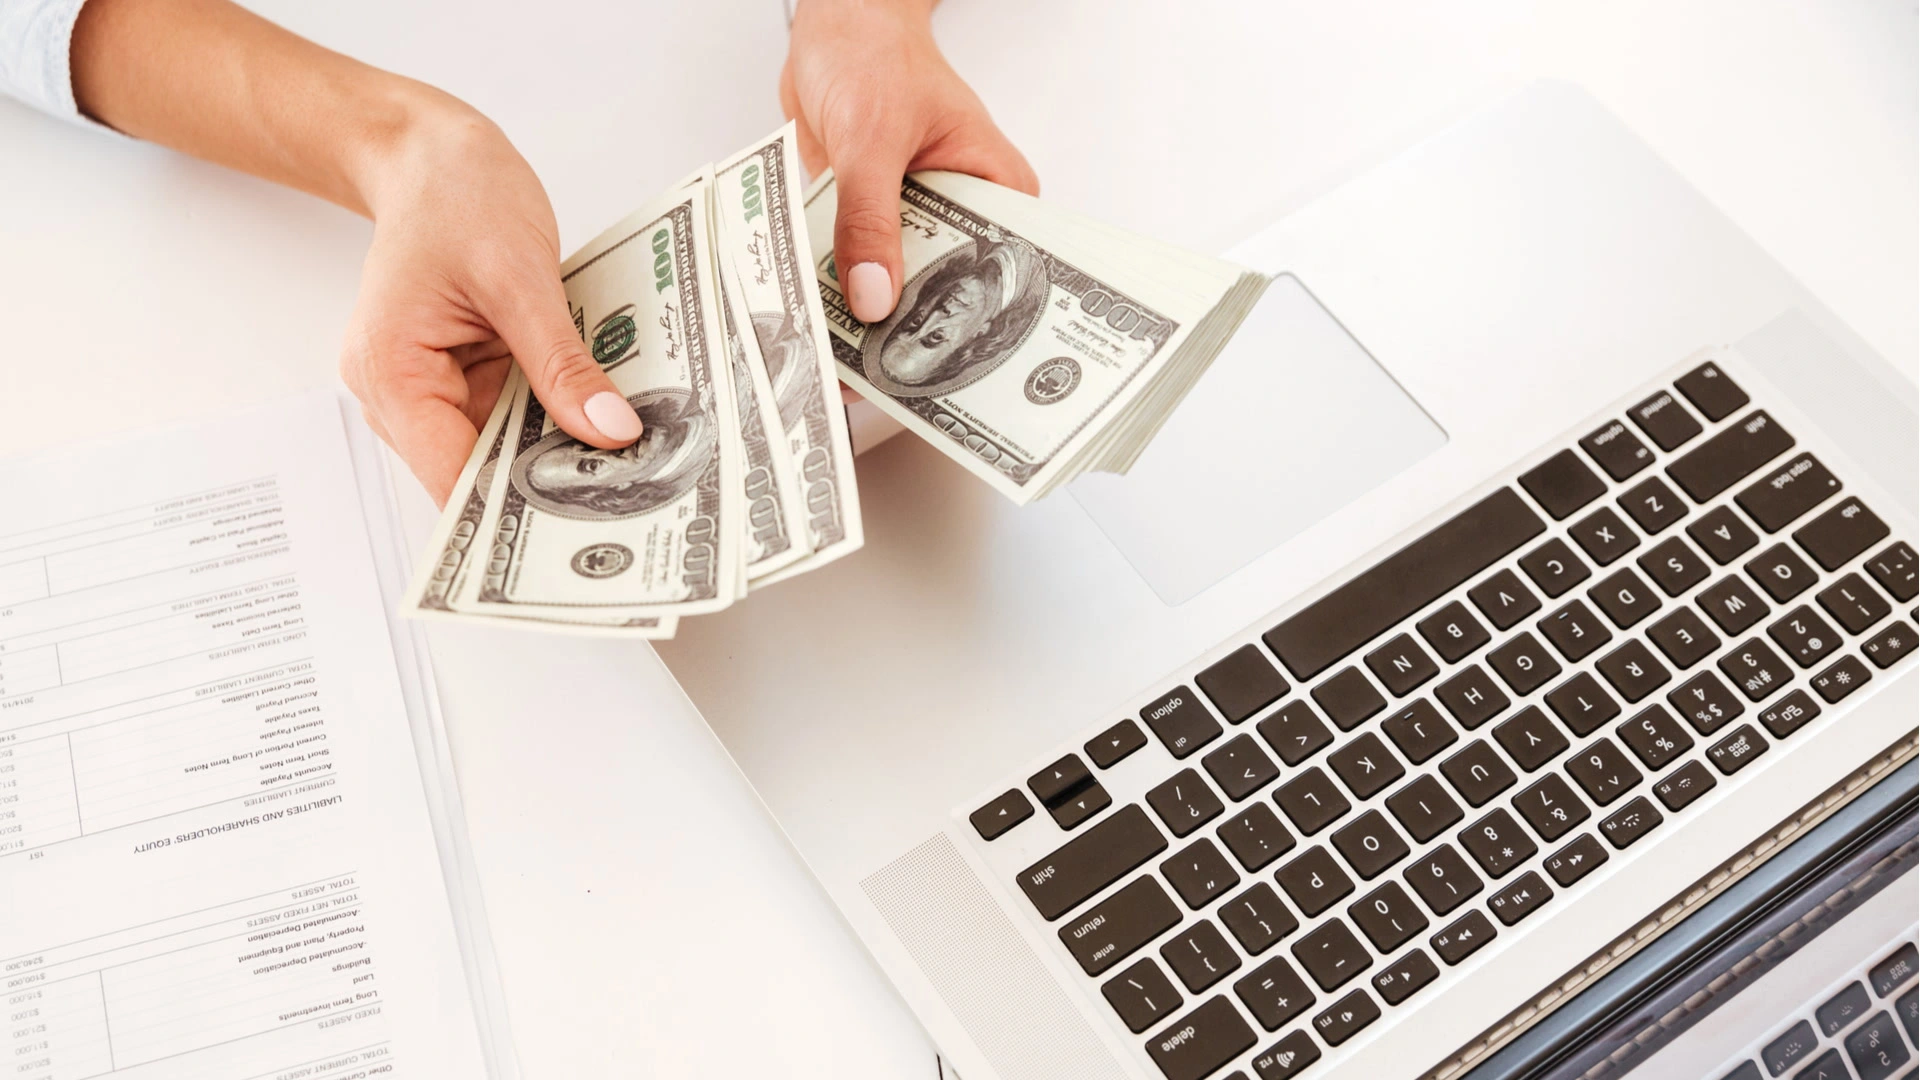 الربح من الانترنت : كيفية ربح المال من الانترنت | طرق الربح من الانترنت